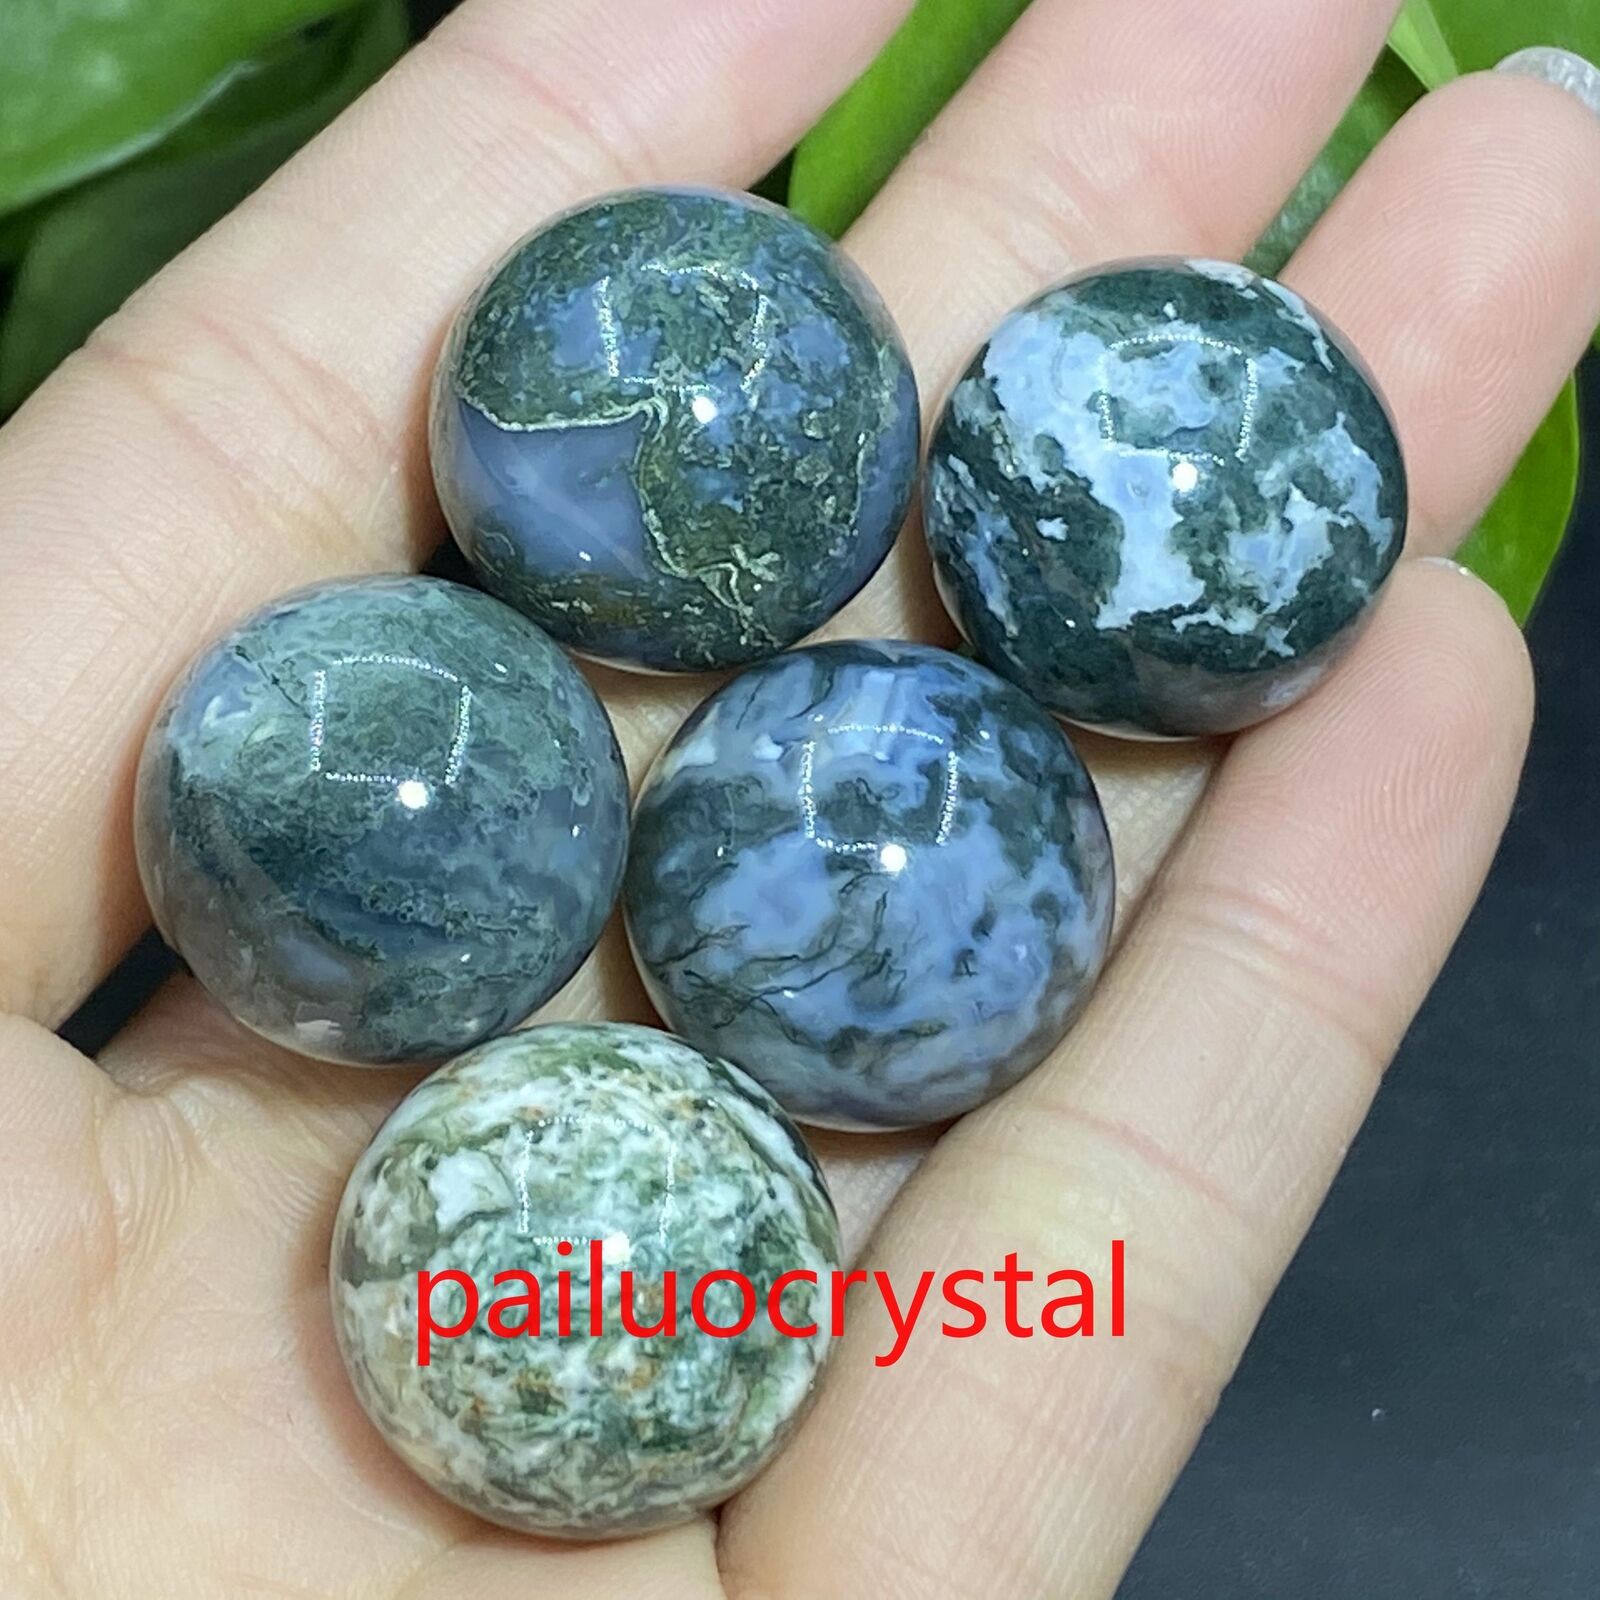 5pcs Natural Aquatic agate Ball Quartz Crystal Sphere Pendant healing Gem 20mm+